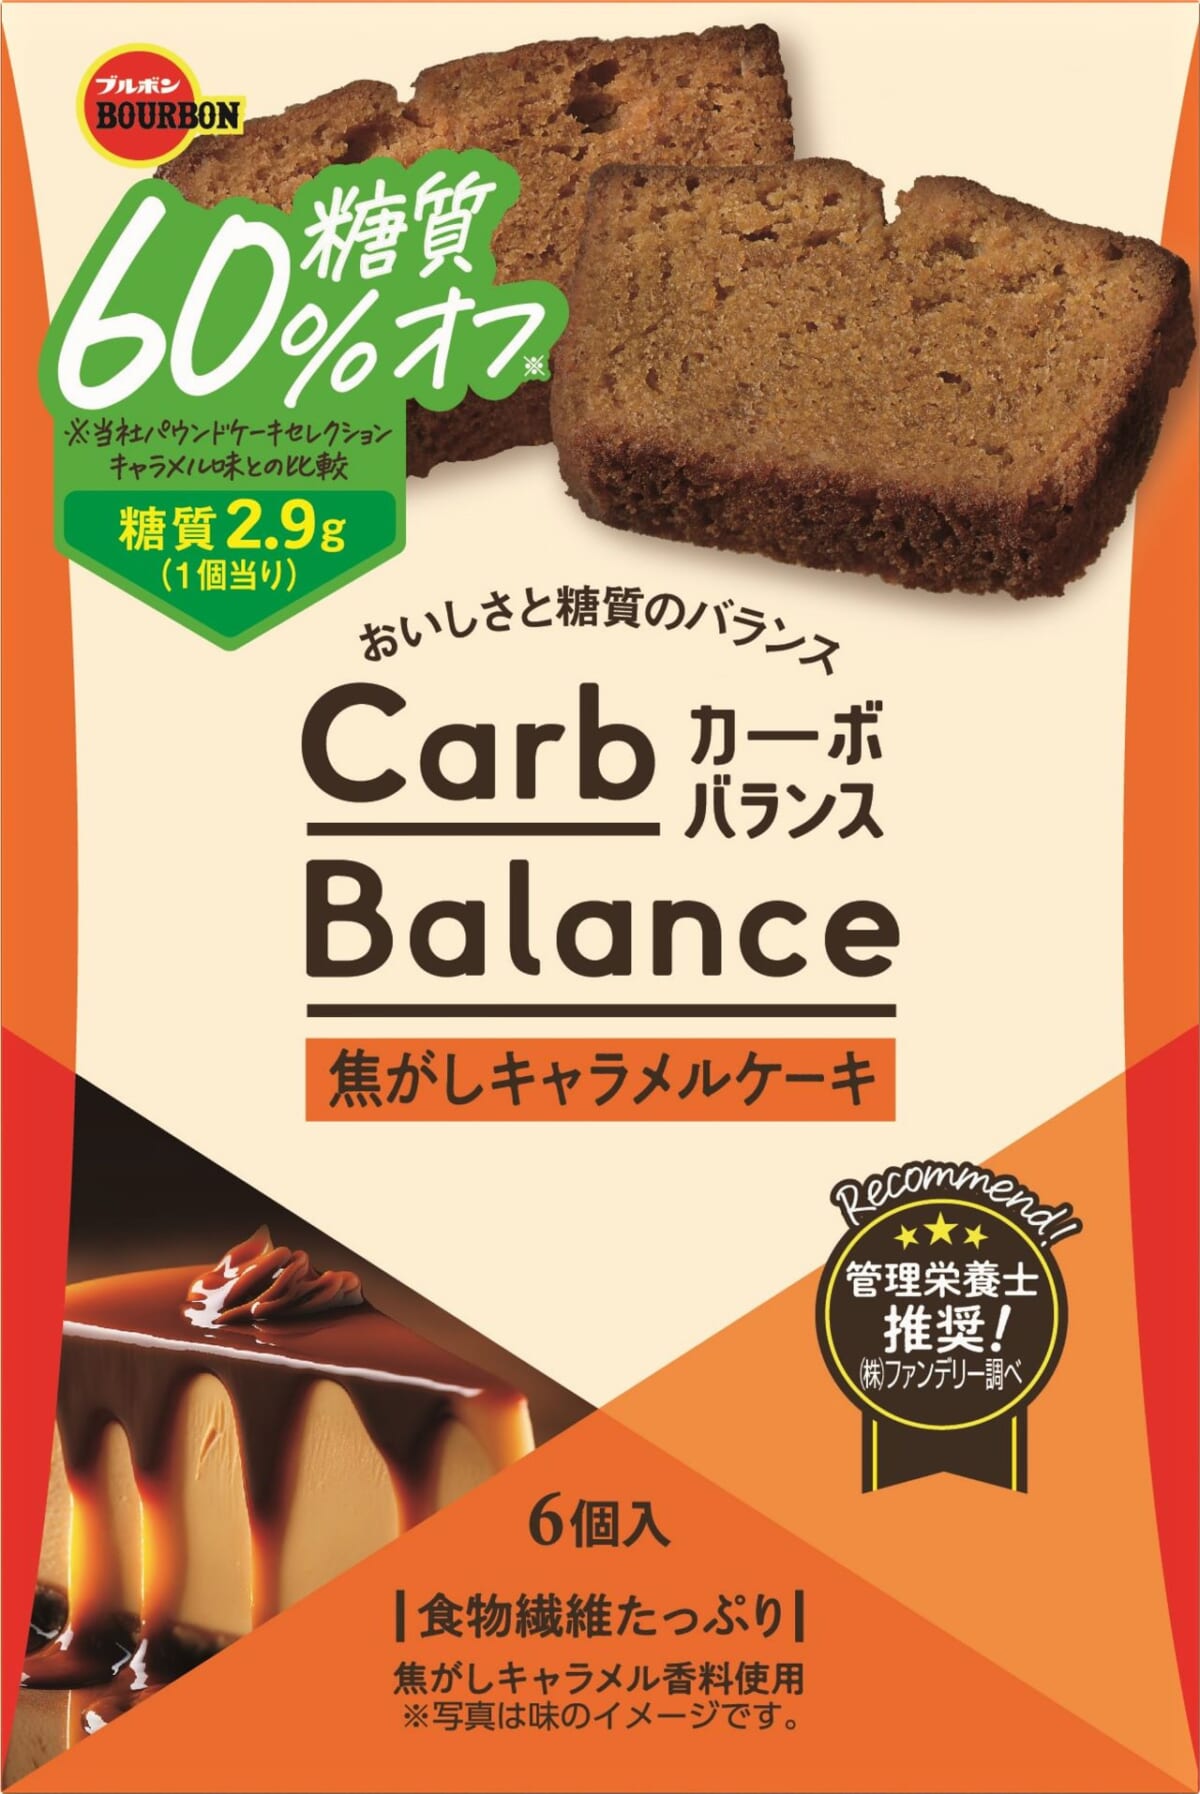 【ブルボン 新商品】糖質60%オフシリーズに「焦がしキャラメルケーキ」が仲間入りだよ～！